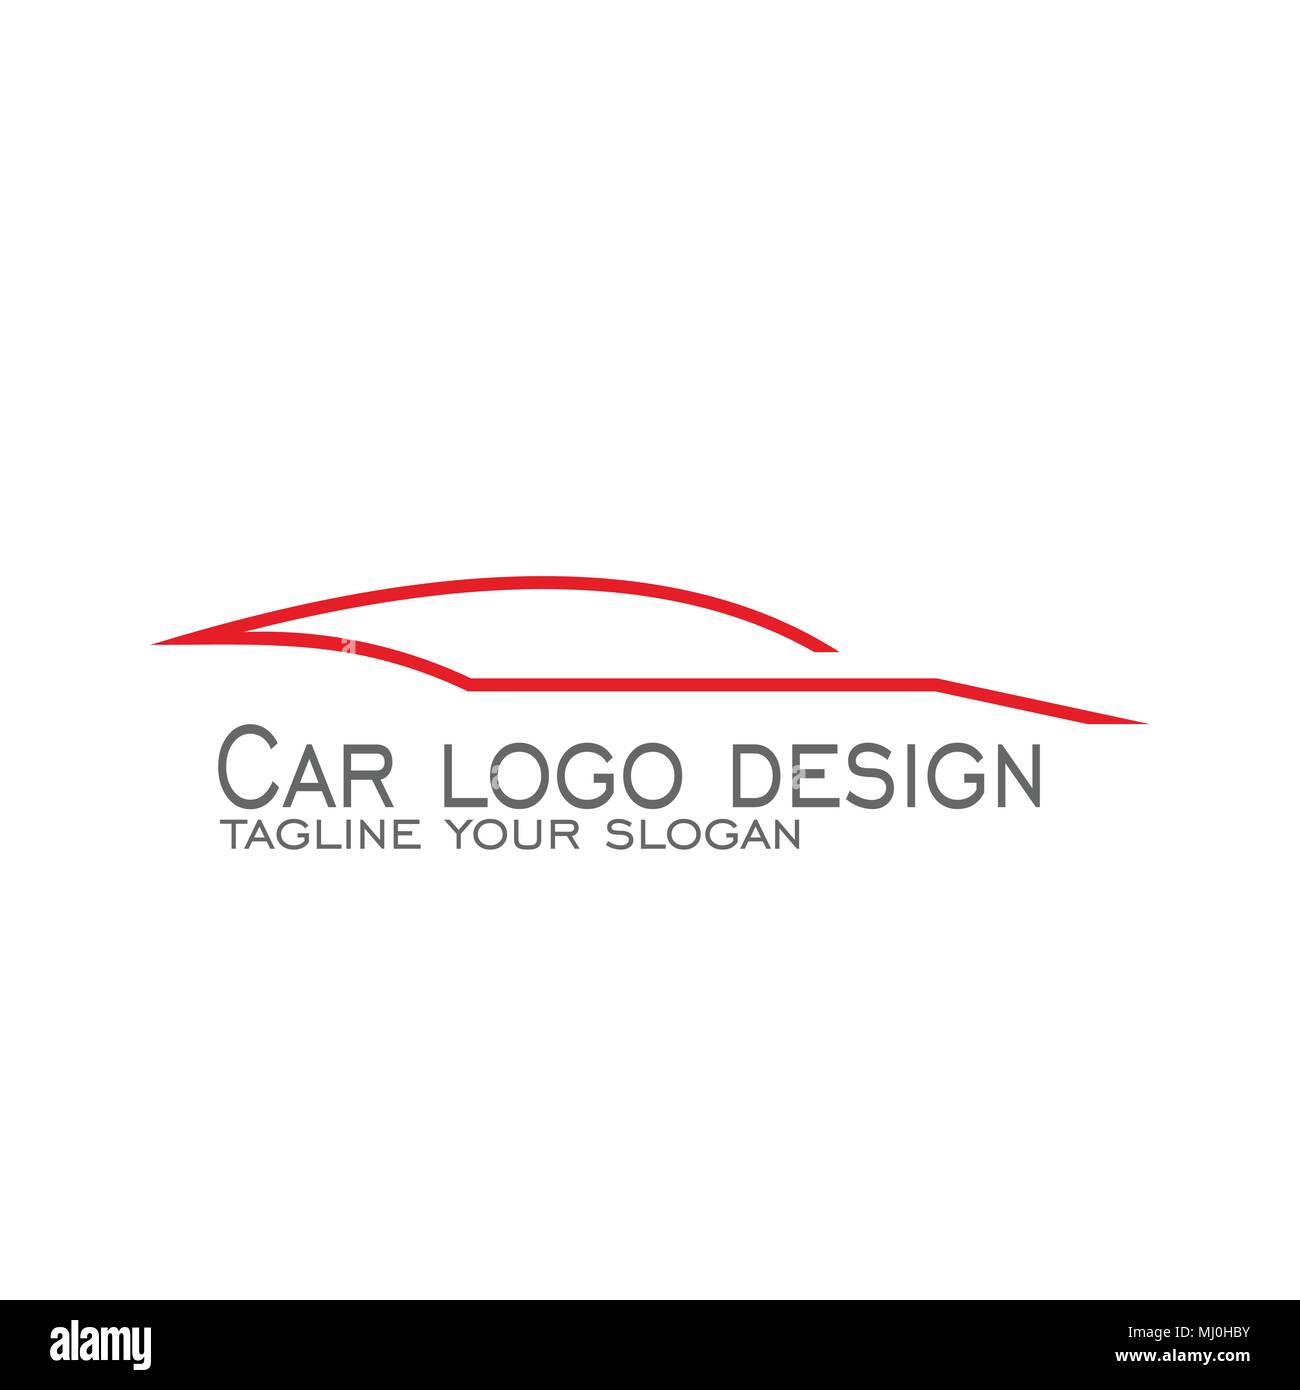 Car logo design, auto car logo, line concept, vector icons Stock